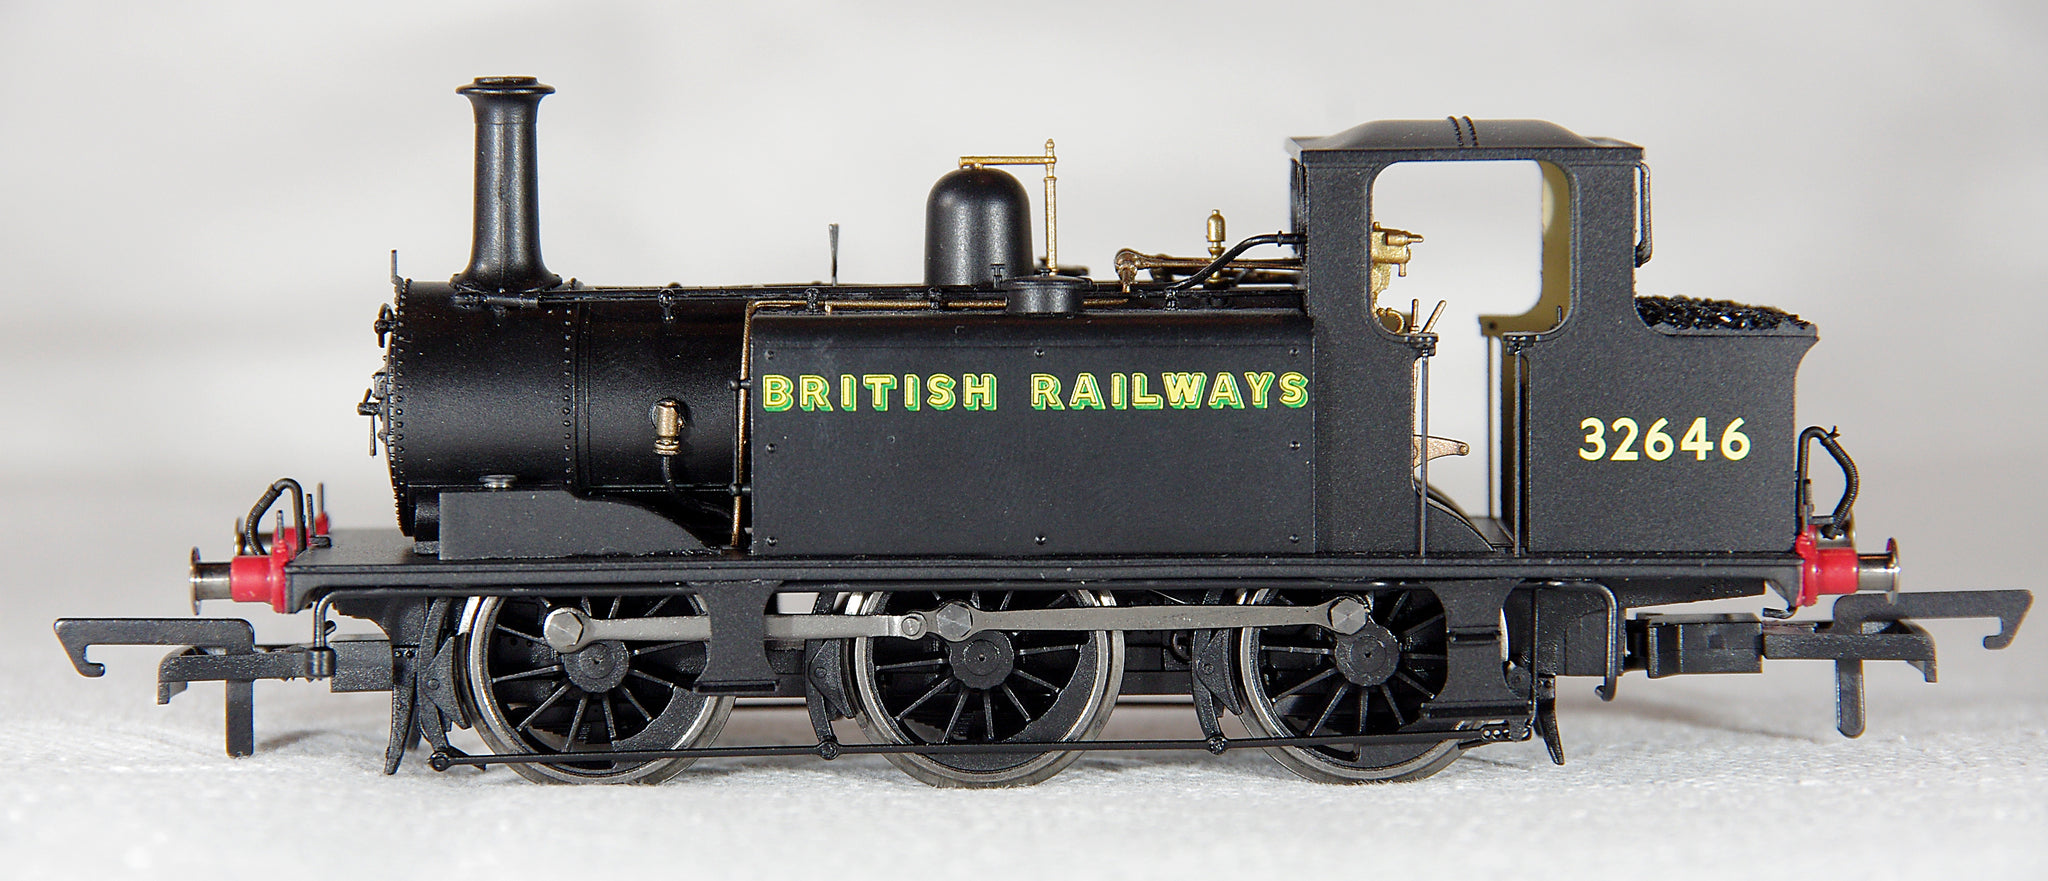 Hornby R30006 BR Terrier 0-6-0T "British Railways" No 32646